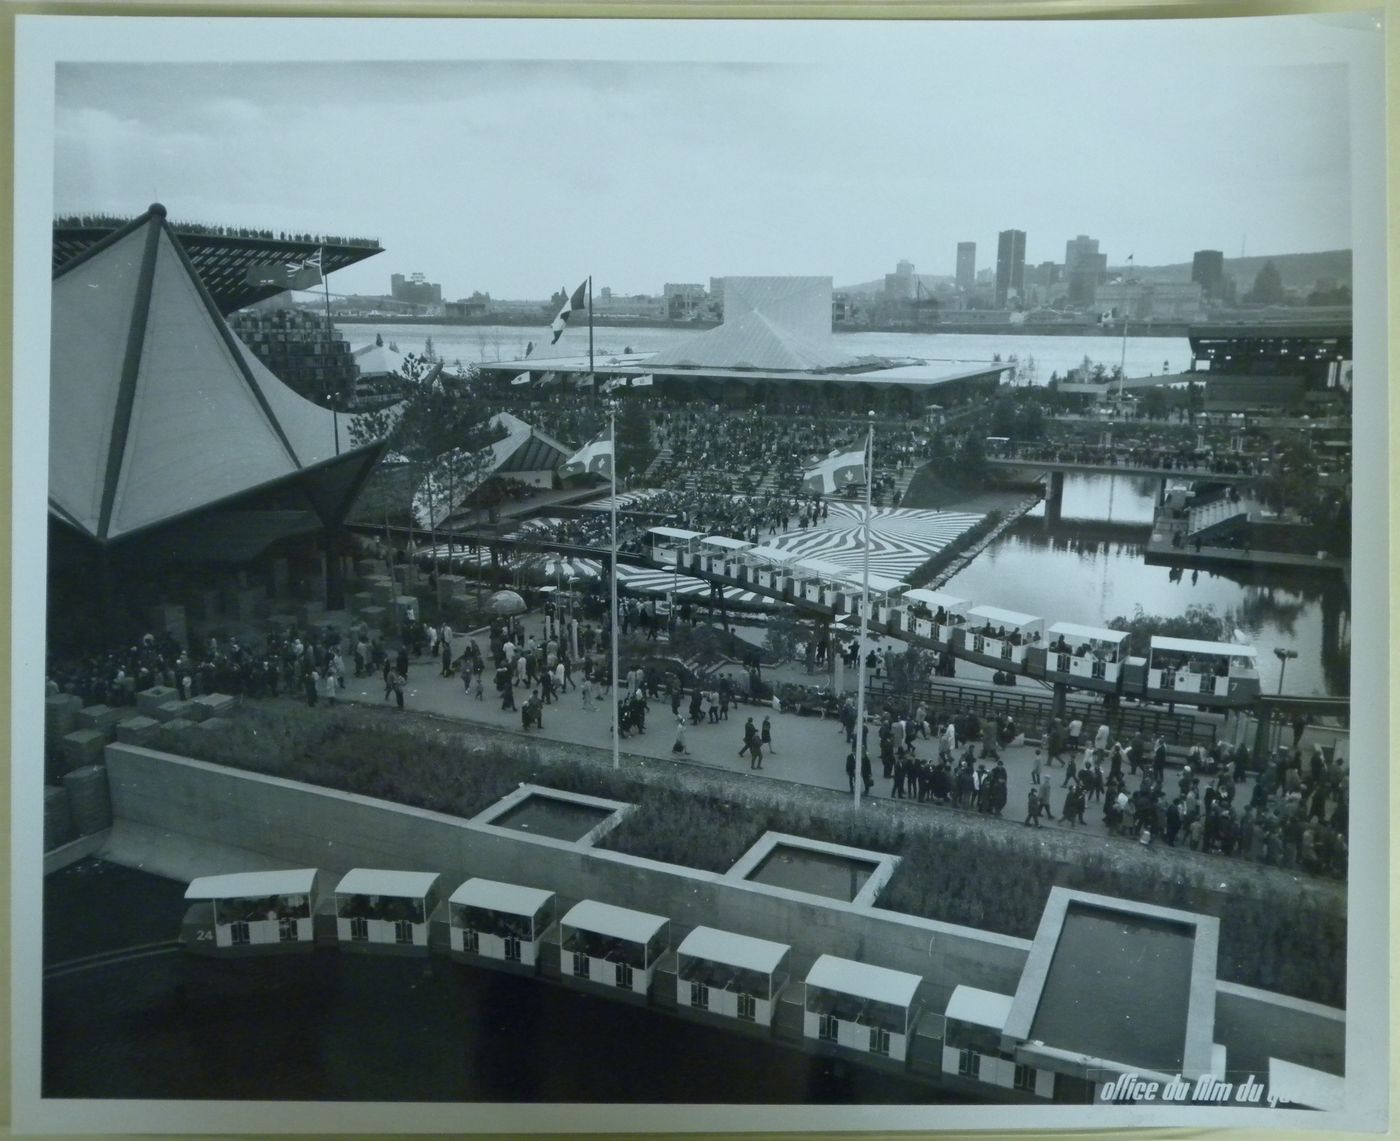 Partial view of the Canada's Pavilion, Expo 67, Montréal, Québec